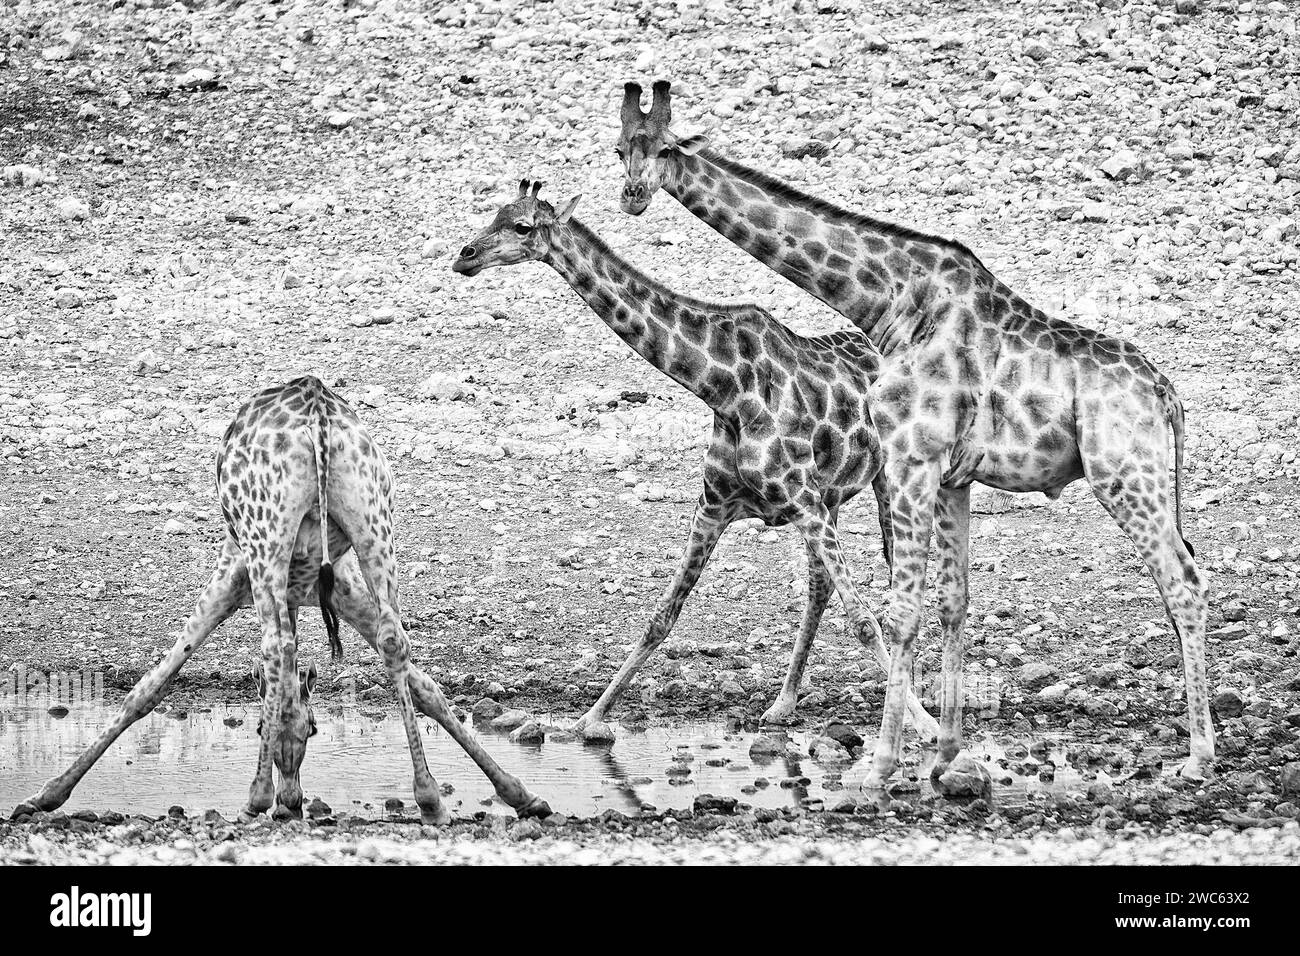 Angolan giraffe (Giraffa angolensis), drinking, drinking, animal, ungulate, black and white, monochrome, bw, Namutoni waterhole, Etosha National Stock Photo